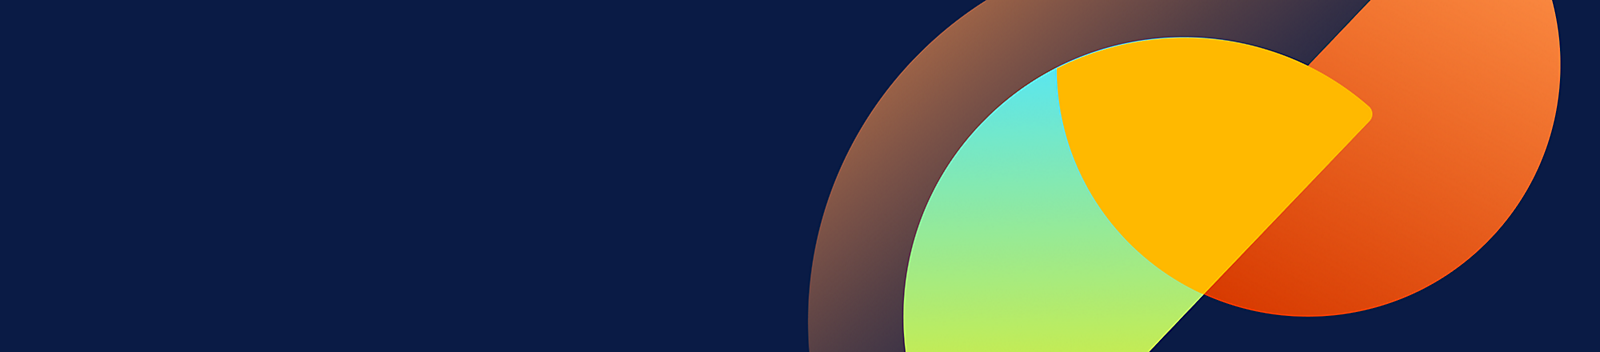 藍色背景上的橘色半圓形和黃色綠色半圓形。